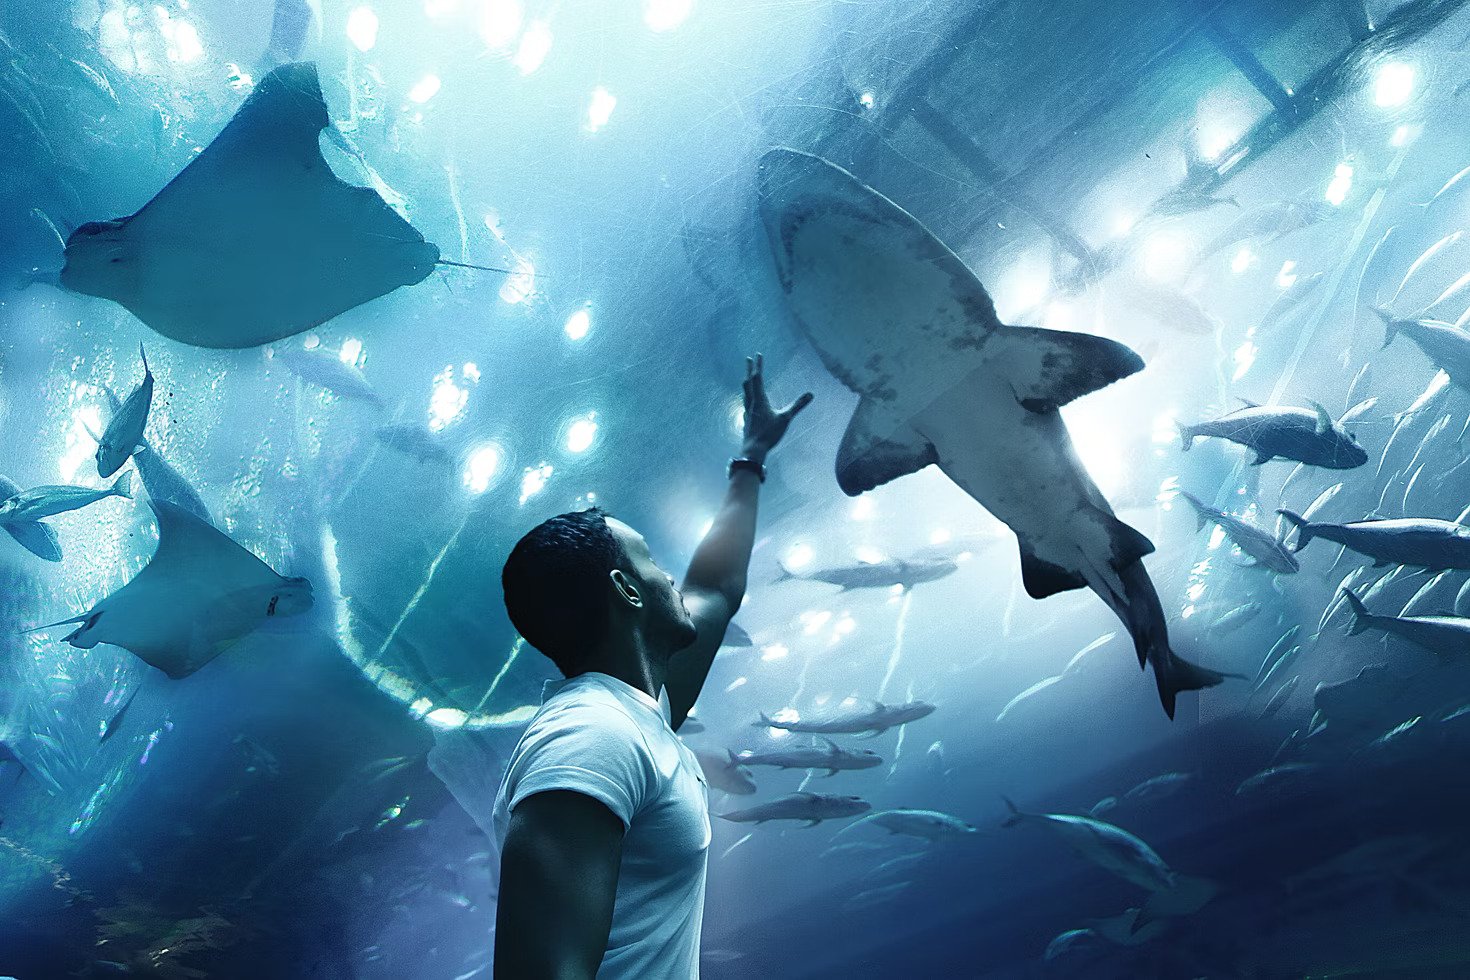 AYA Universe Ticket + Dubai Aquarium Underwater Zoo